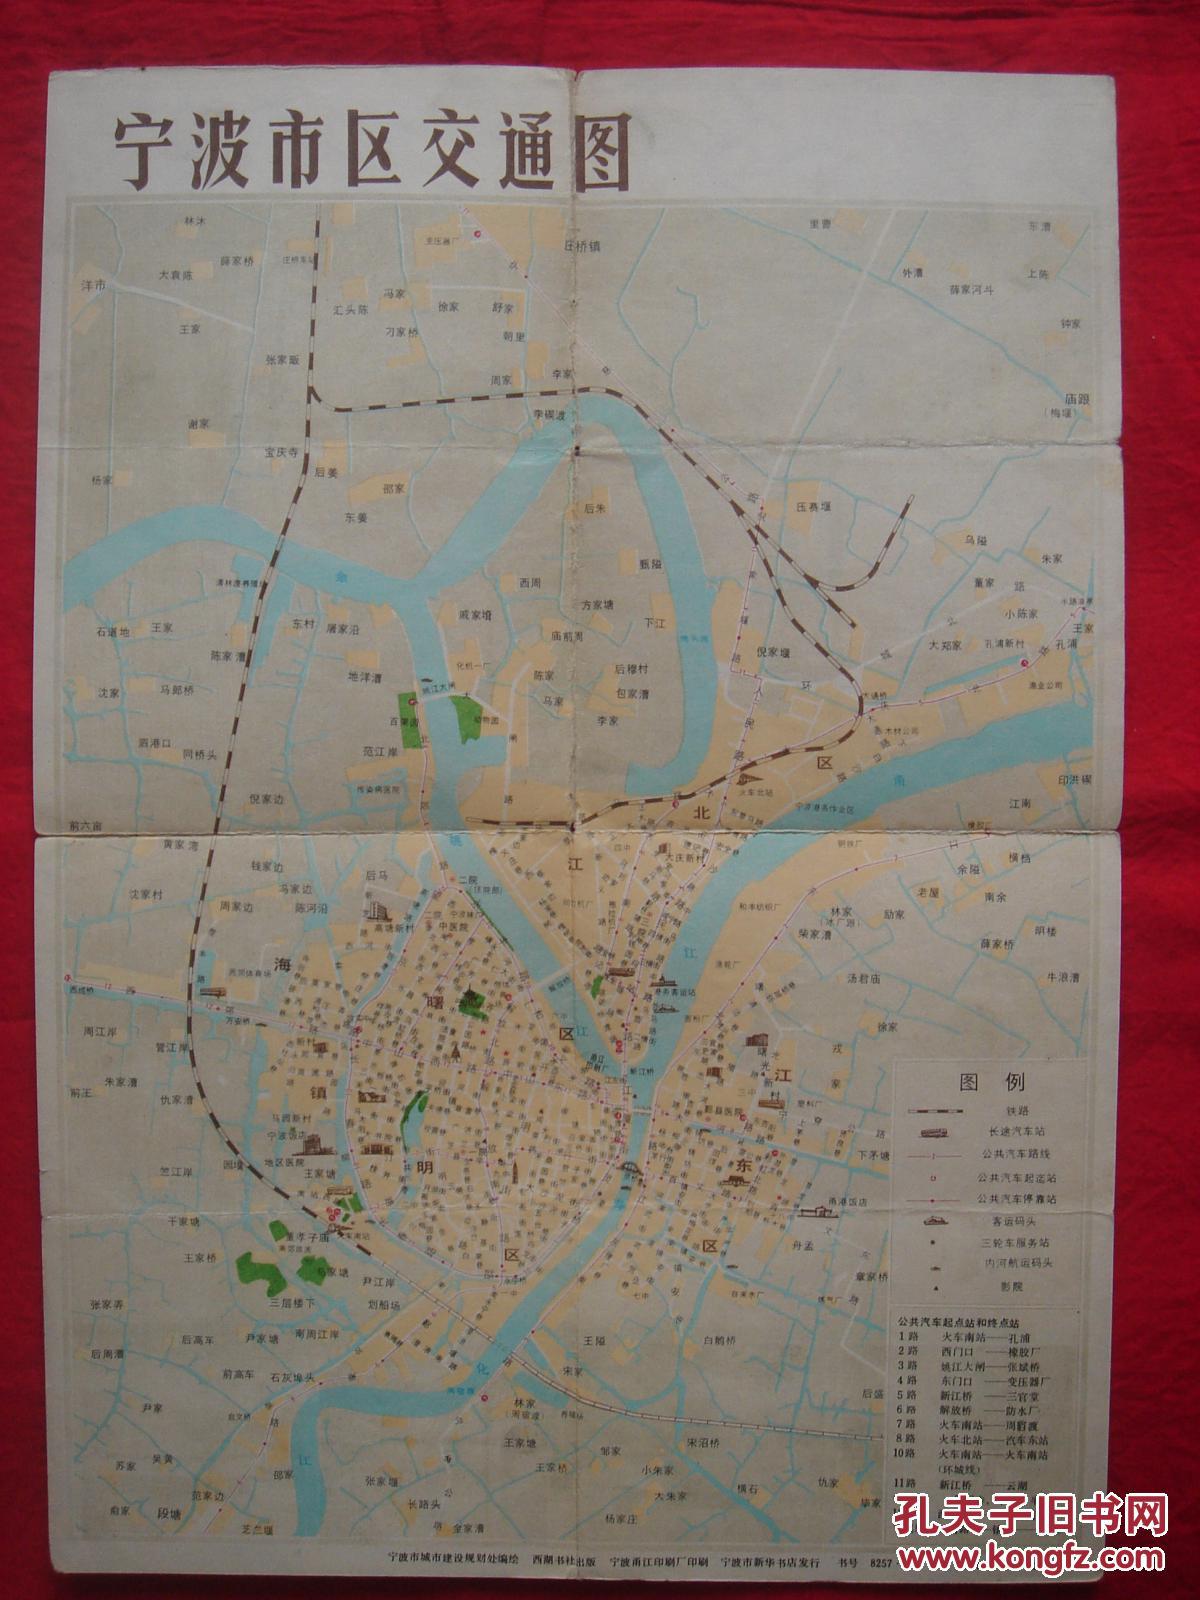 【旧地图】宁波市交通图 8开 80年代初图片